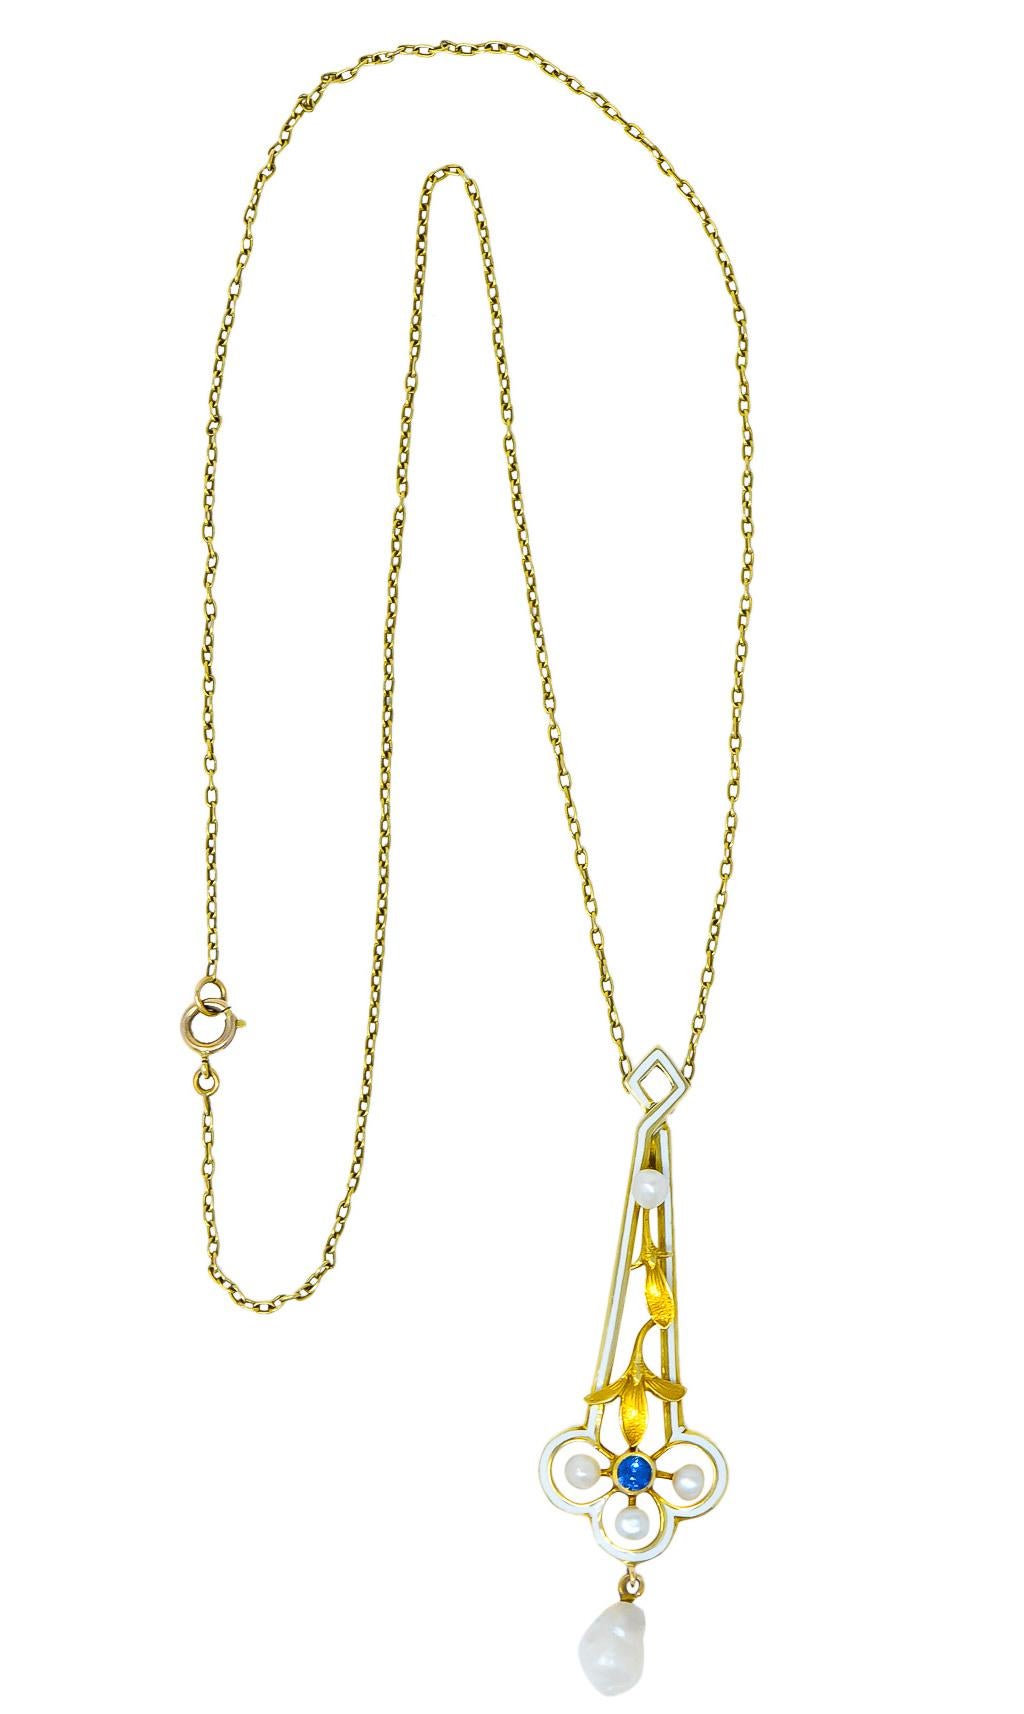 A.J. Hedges & Co. 1905 Art Nouveau Enamel Sapphire Pearl 14 Karat Gold Necklace 6